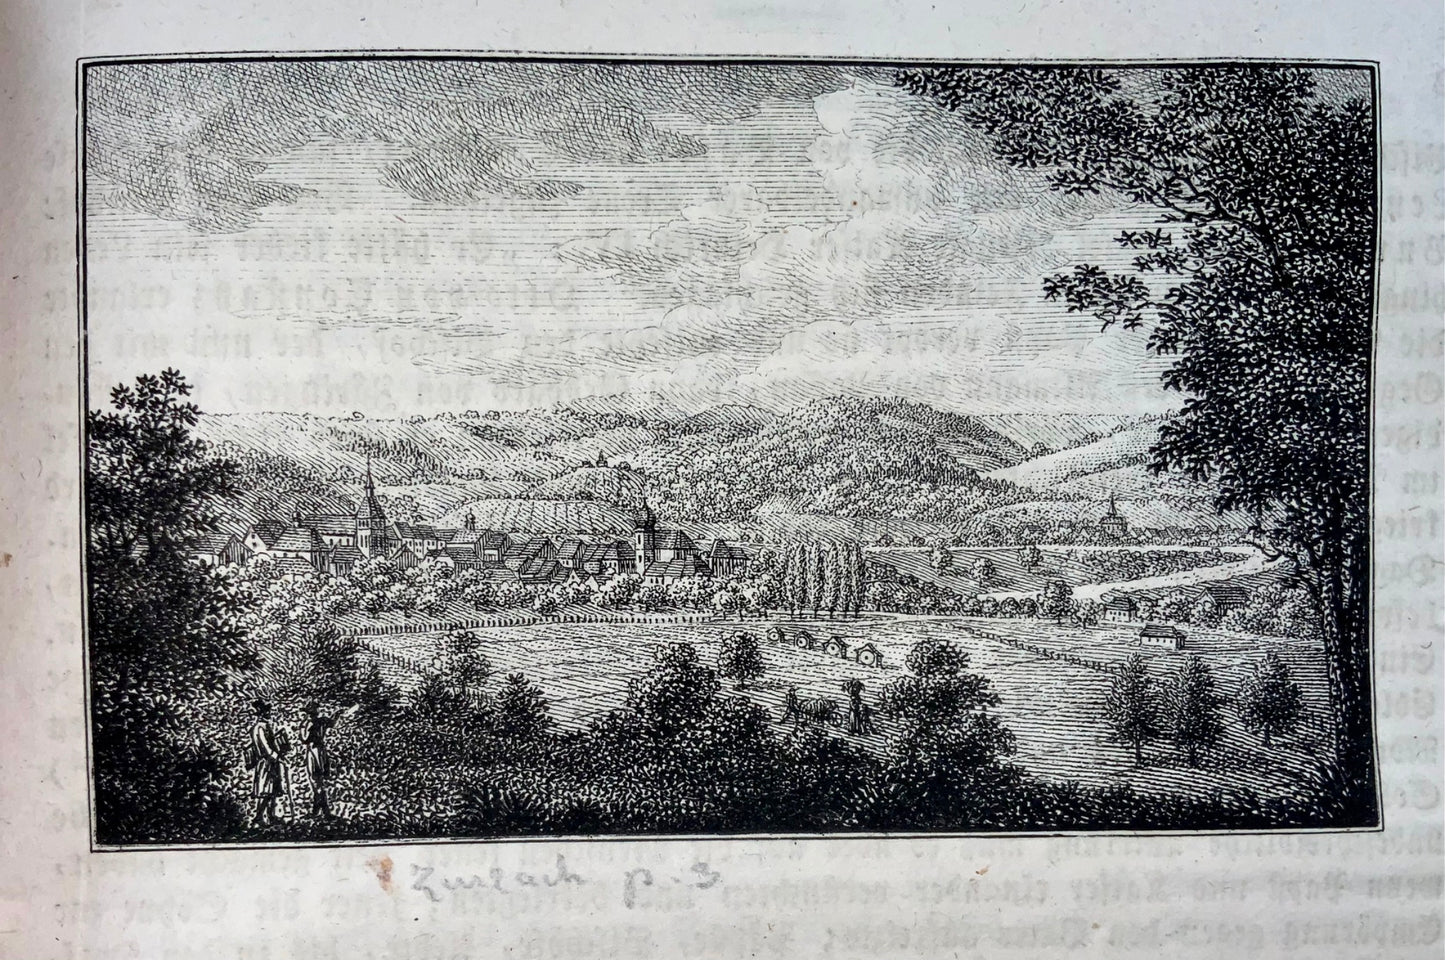 1819-29 Neujahrsblatt for Aargau, Switzerland, complete set, illustrated